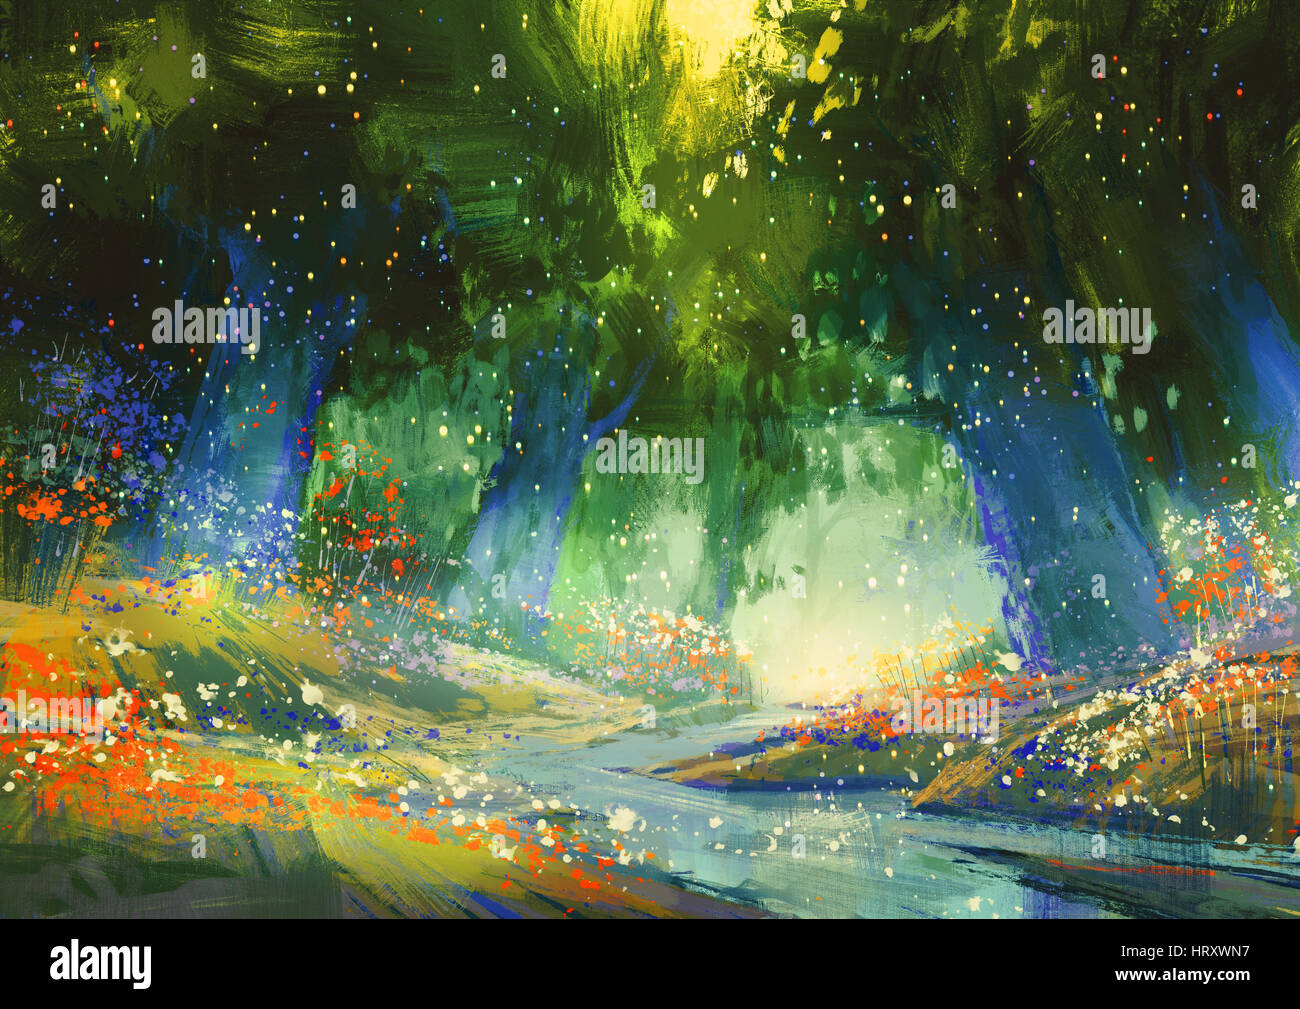 Sonic blue et vert forêt avec une atmosphère fantastique,illustration peinture Banque D'Images